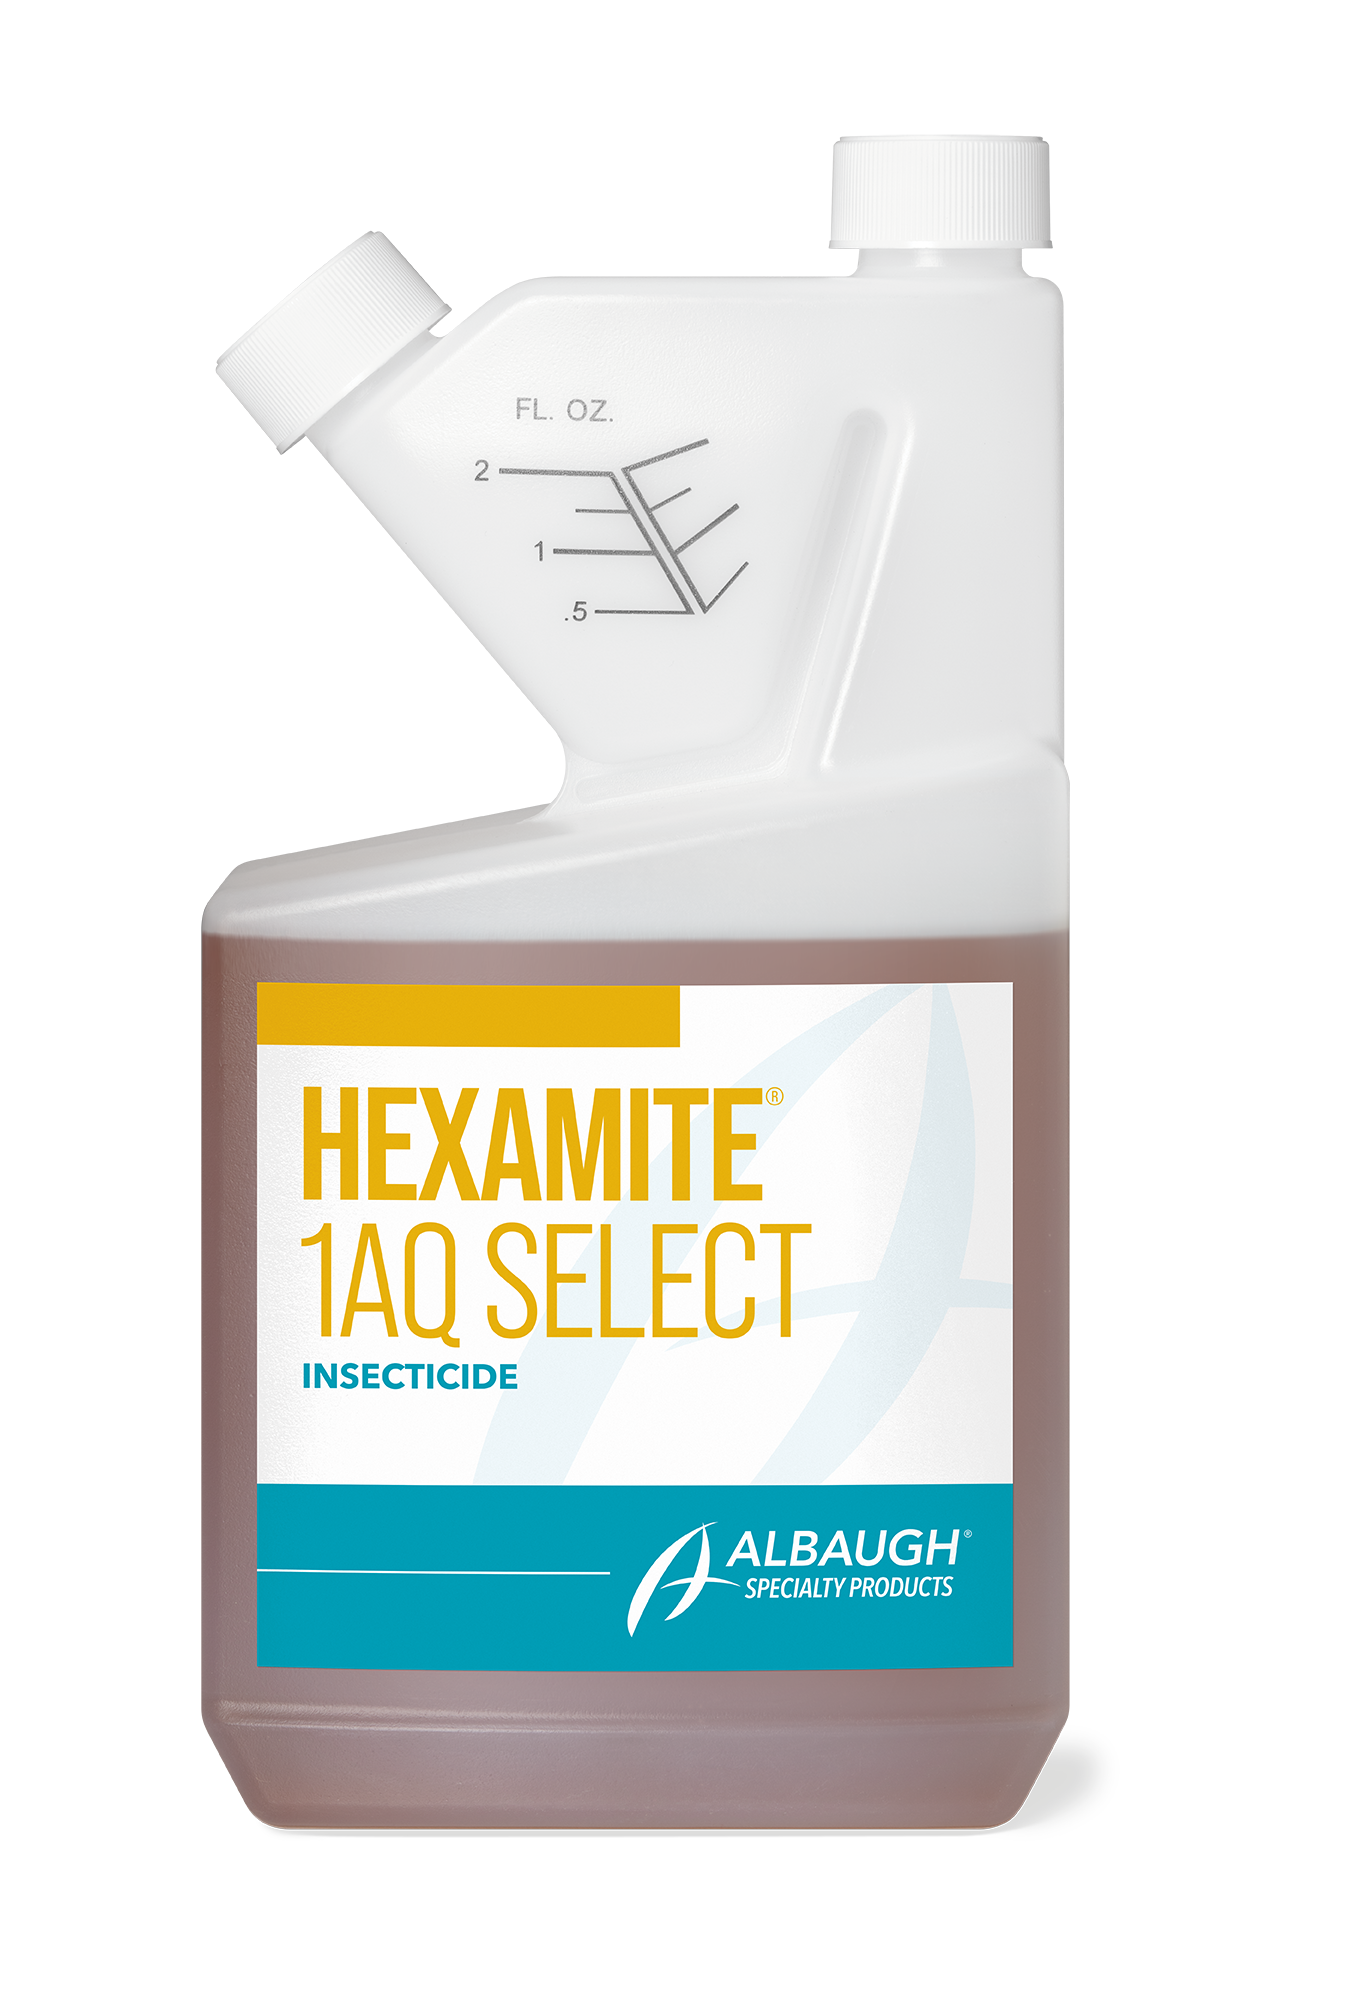 Hexamite 1AQ Select™